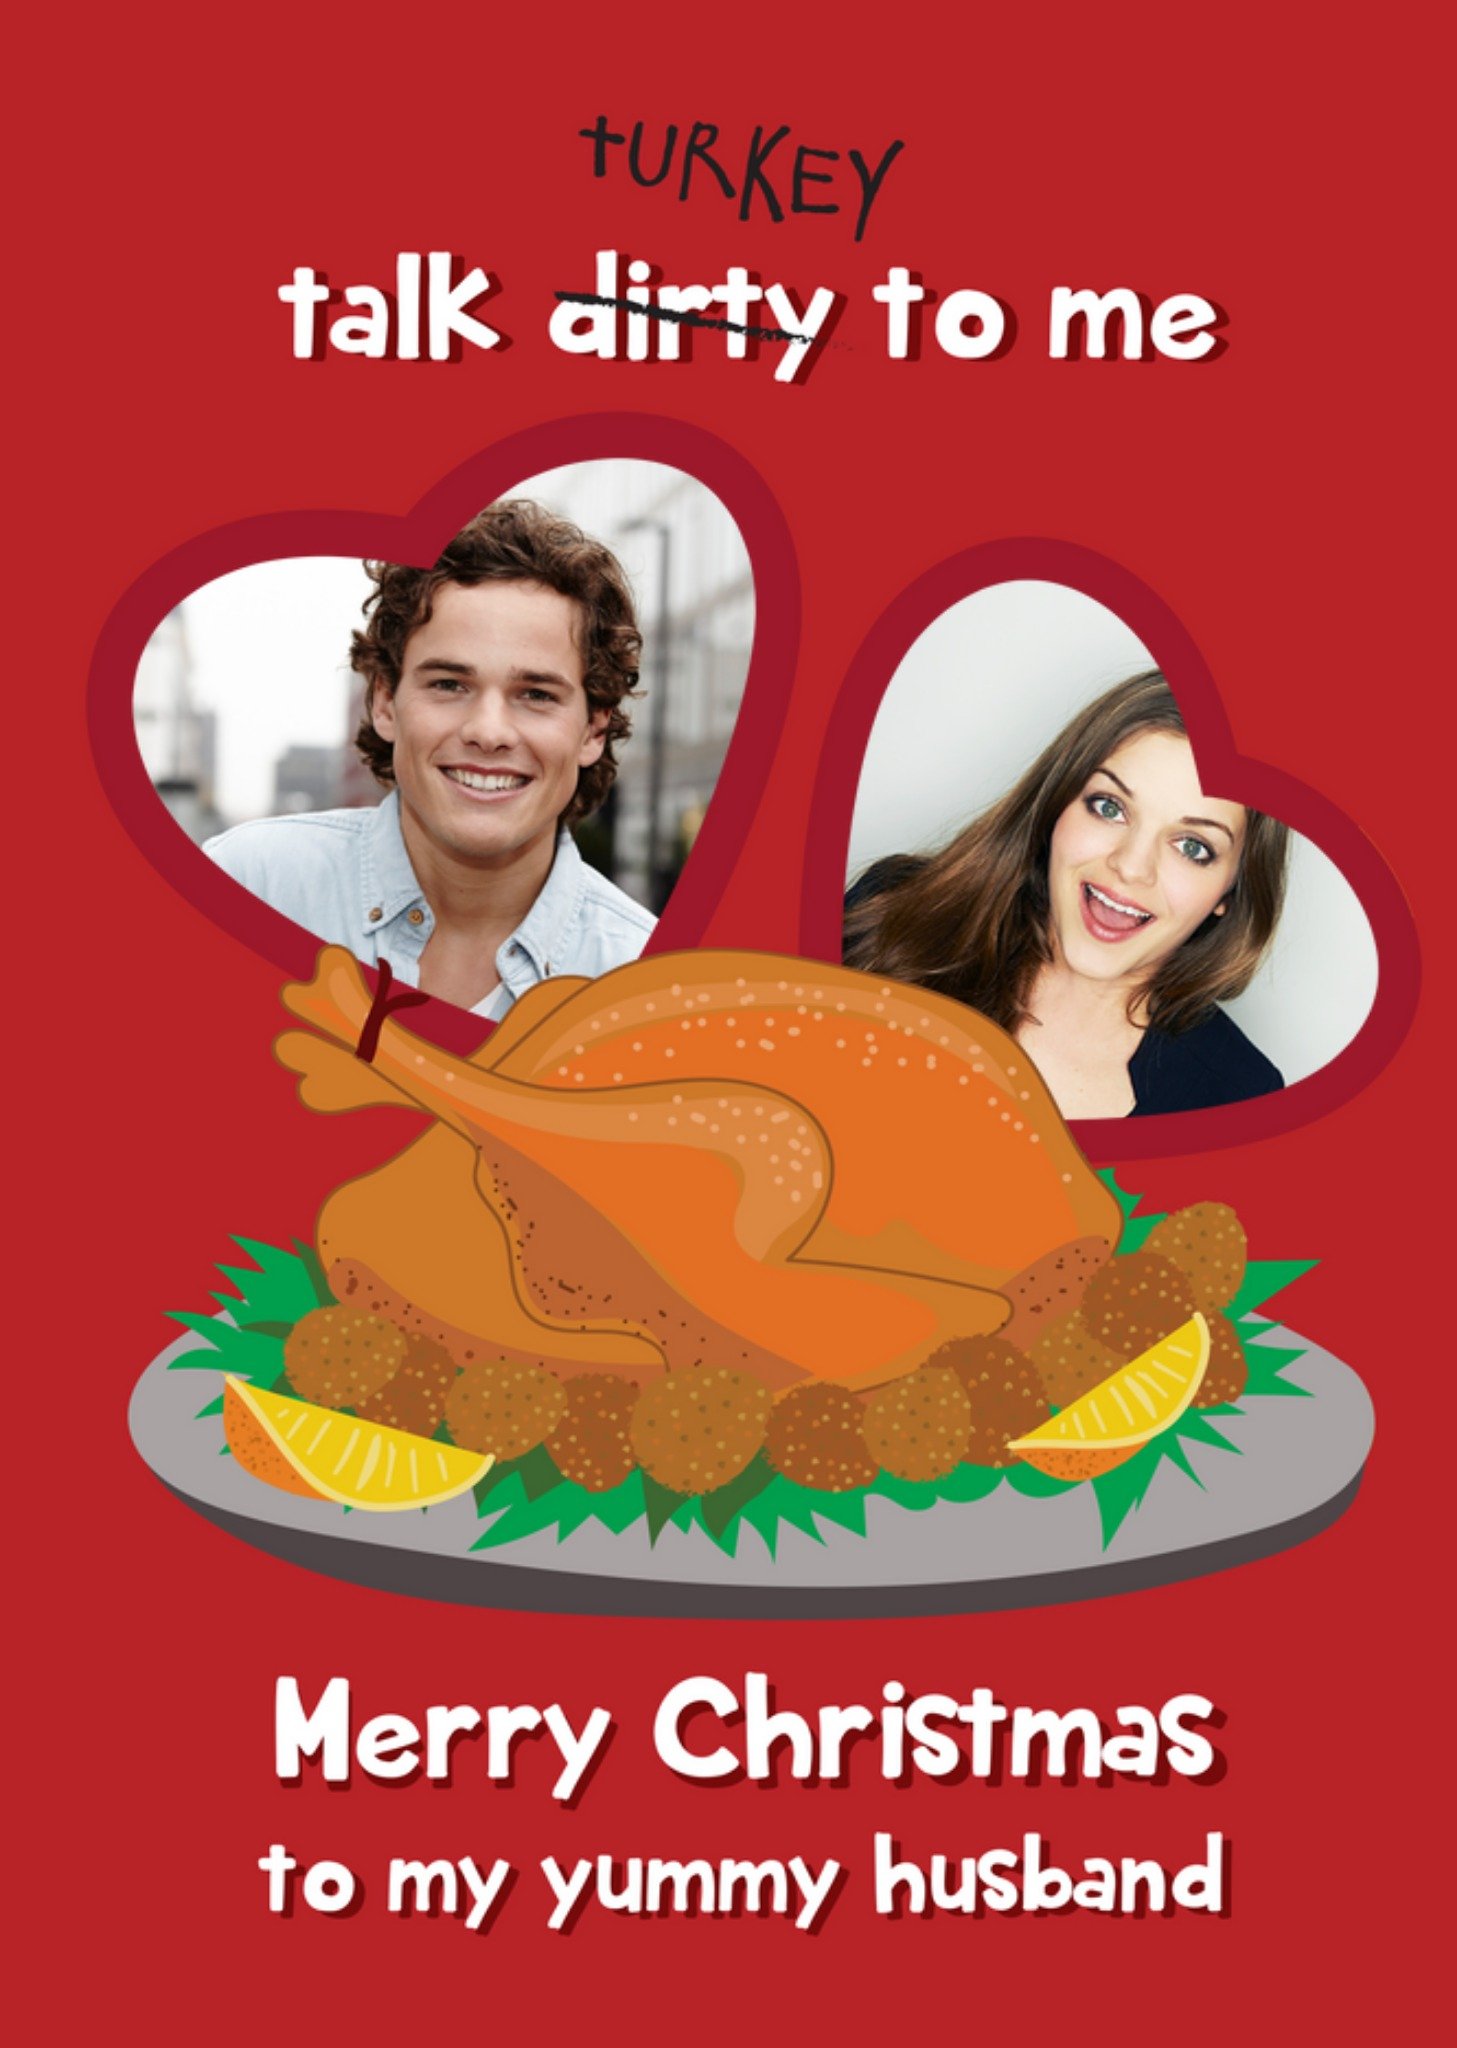 Moonpig Yummy Husband Talk Turkey To Me Photo Upload Christmas Card, Large